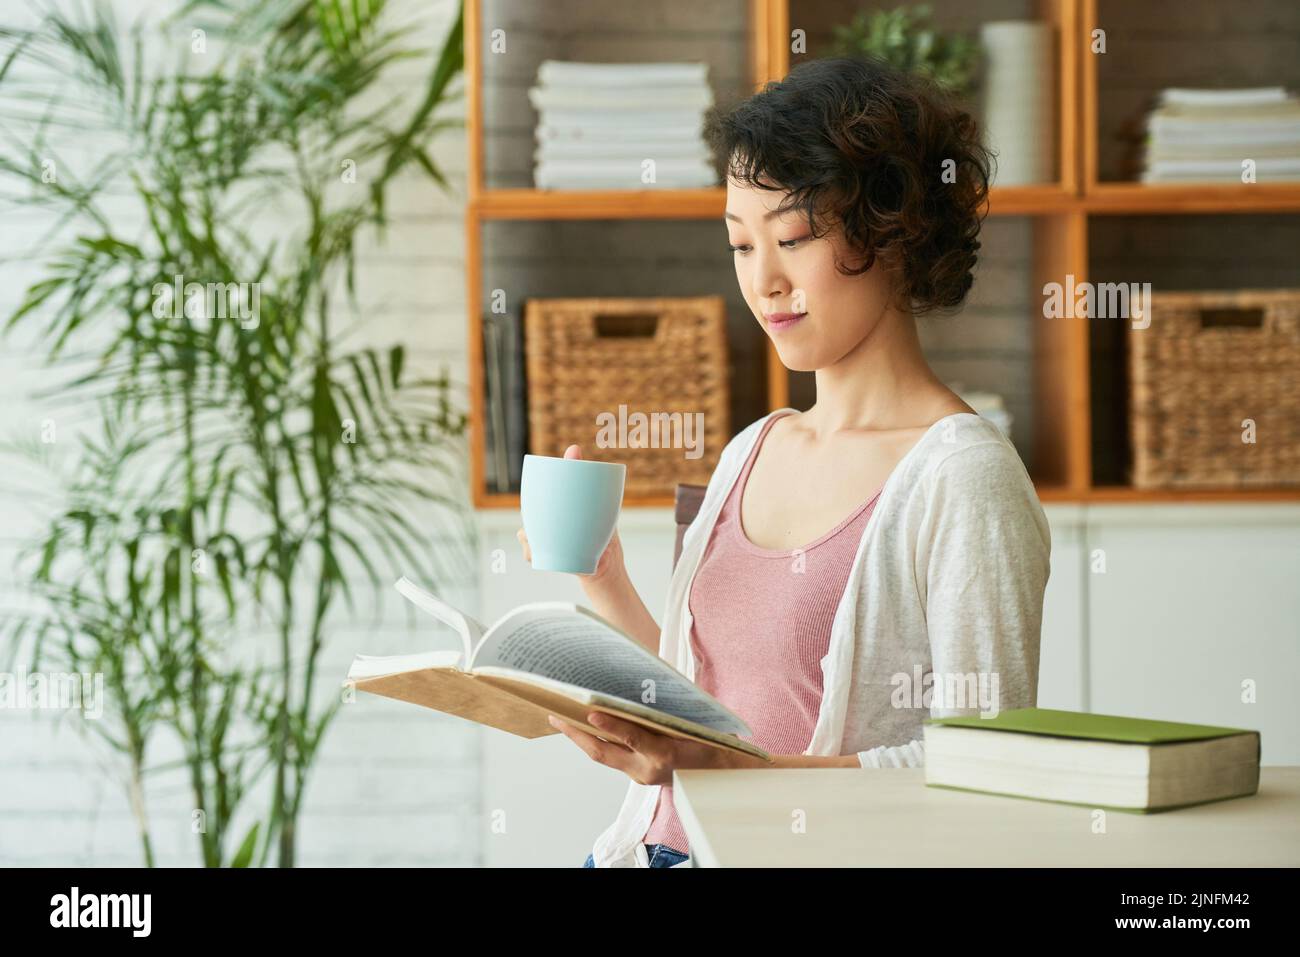 Porträt einer hübschen japanischen Frau in der Taille, die oben und in der Strickjacke sitzt und im gemütlichen Wohnzimmer Kräutertee trinkt und Abenteuergeschichte liest Stockfoto